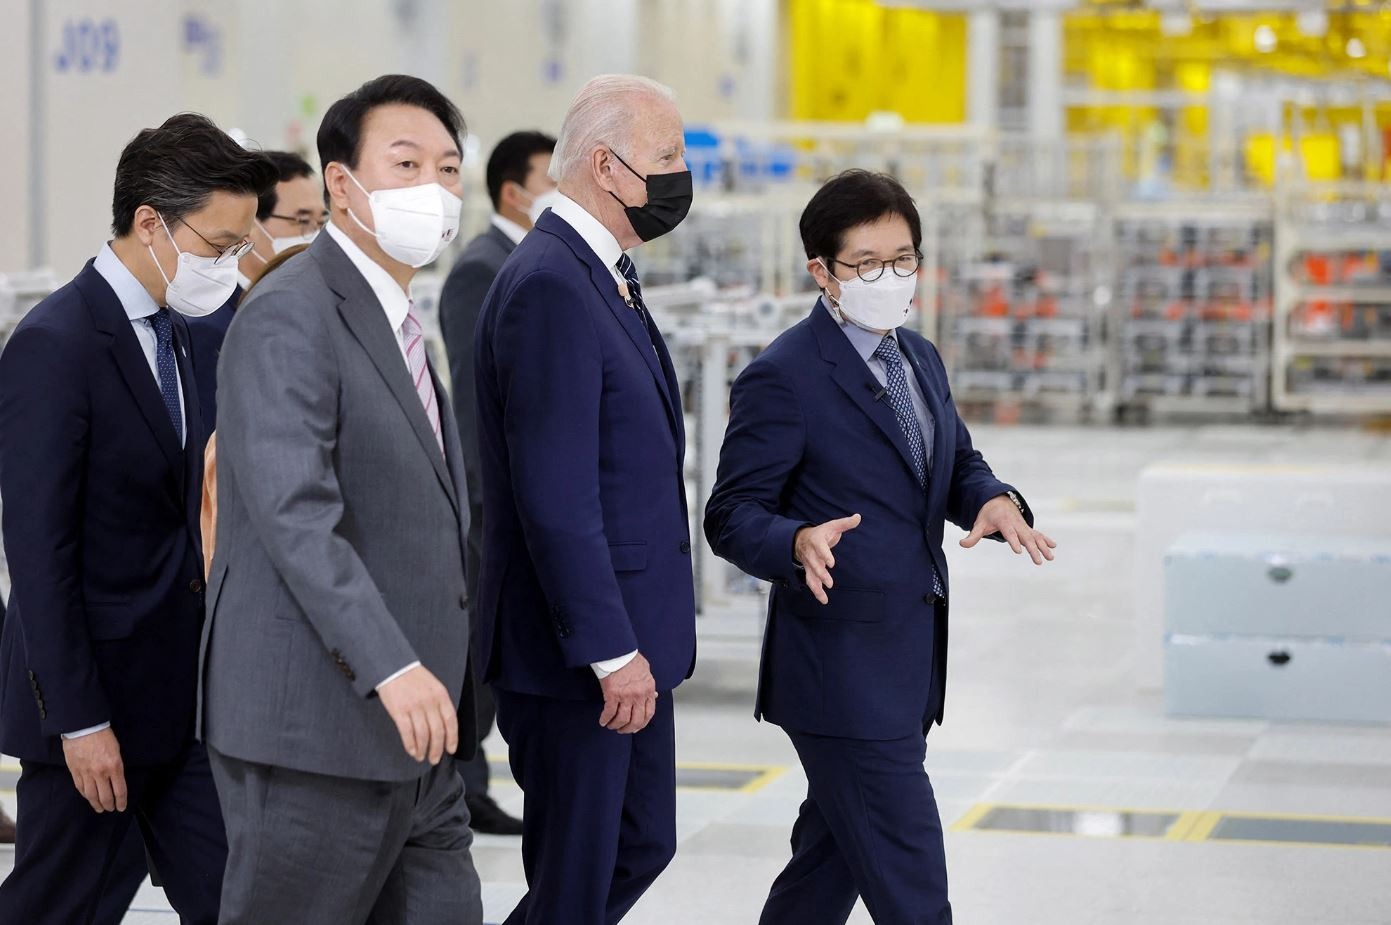 Tổng thống Mỹ Joe Biden và tổng thống Hàn Quốc Yoon Suk-yeol tới thăm nhà máy Samsung Electronic Pyeongtaek ở Pyeongtaek vào ngày 20/5/2022. Ảnh: AFP